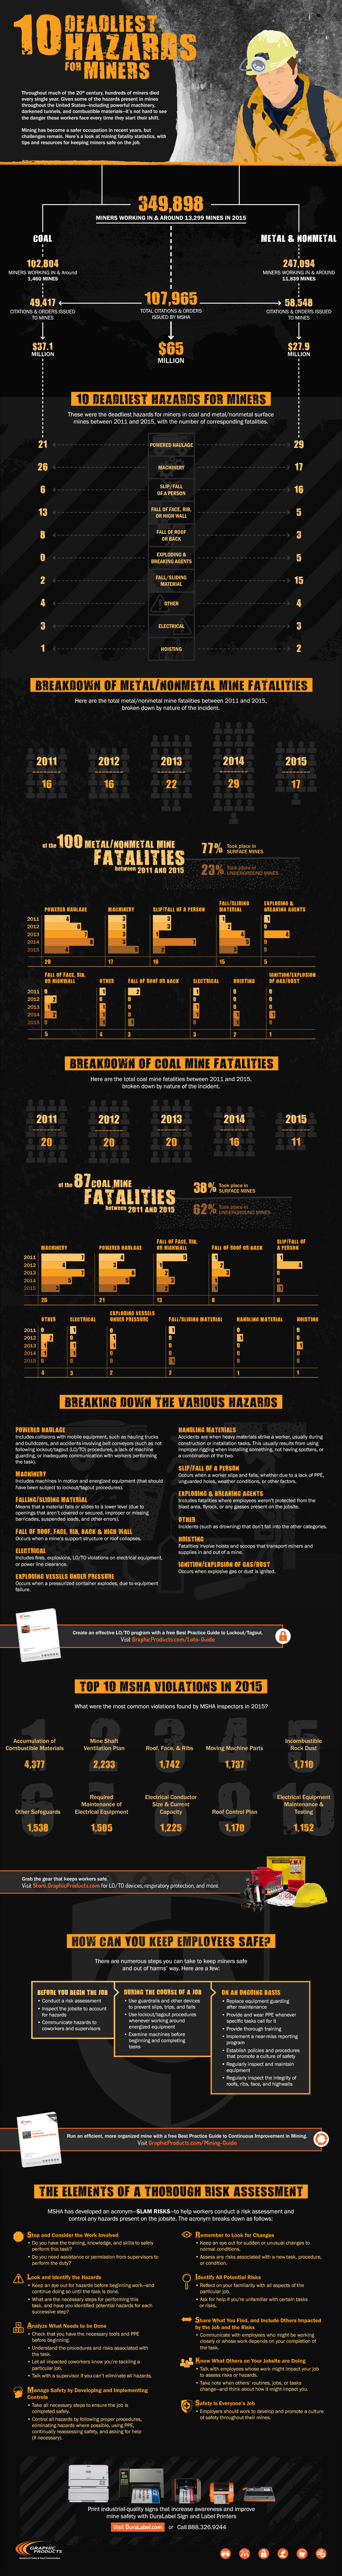 10-deadliest-hazards-for-miners-infographic